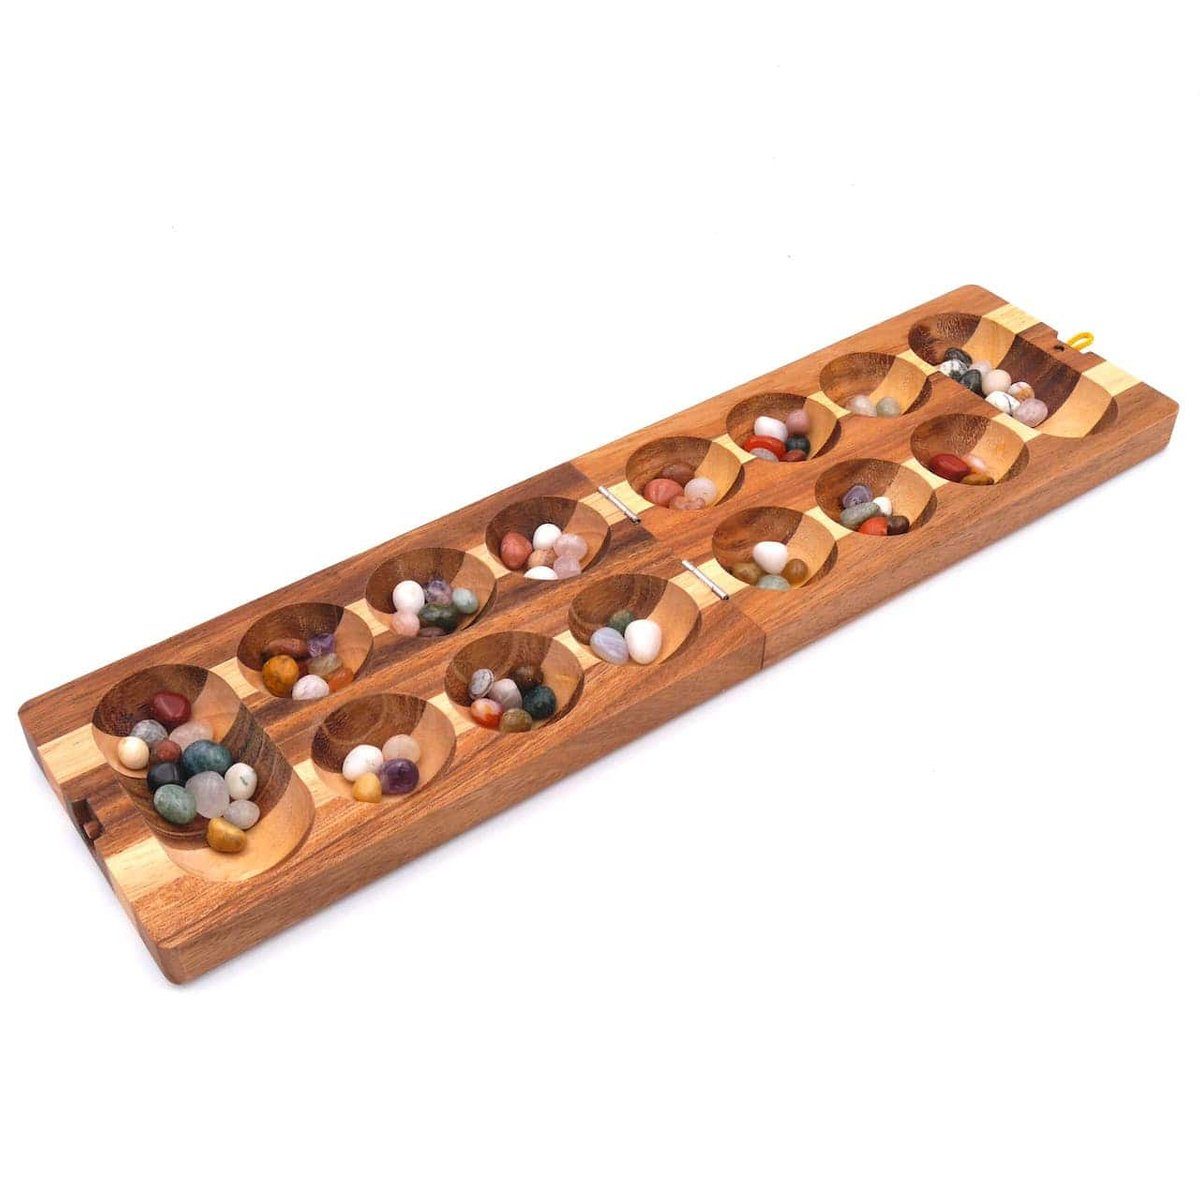 ROMBOL Denkspiele Spiel, Brettspiel Halbedelsteinen, - Kalaha hochwertiges Halbedelsteine Steinchenspiel zweifarbig, Holzspiel inkl